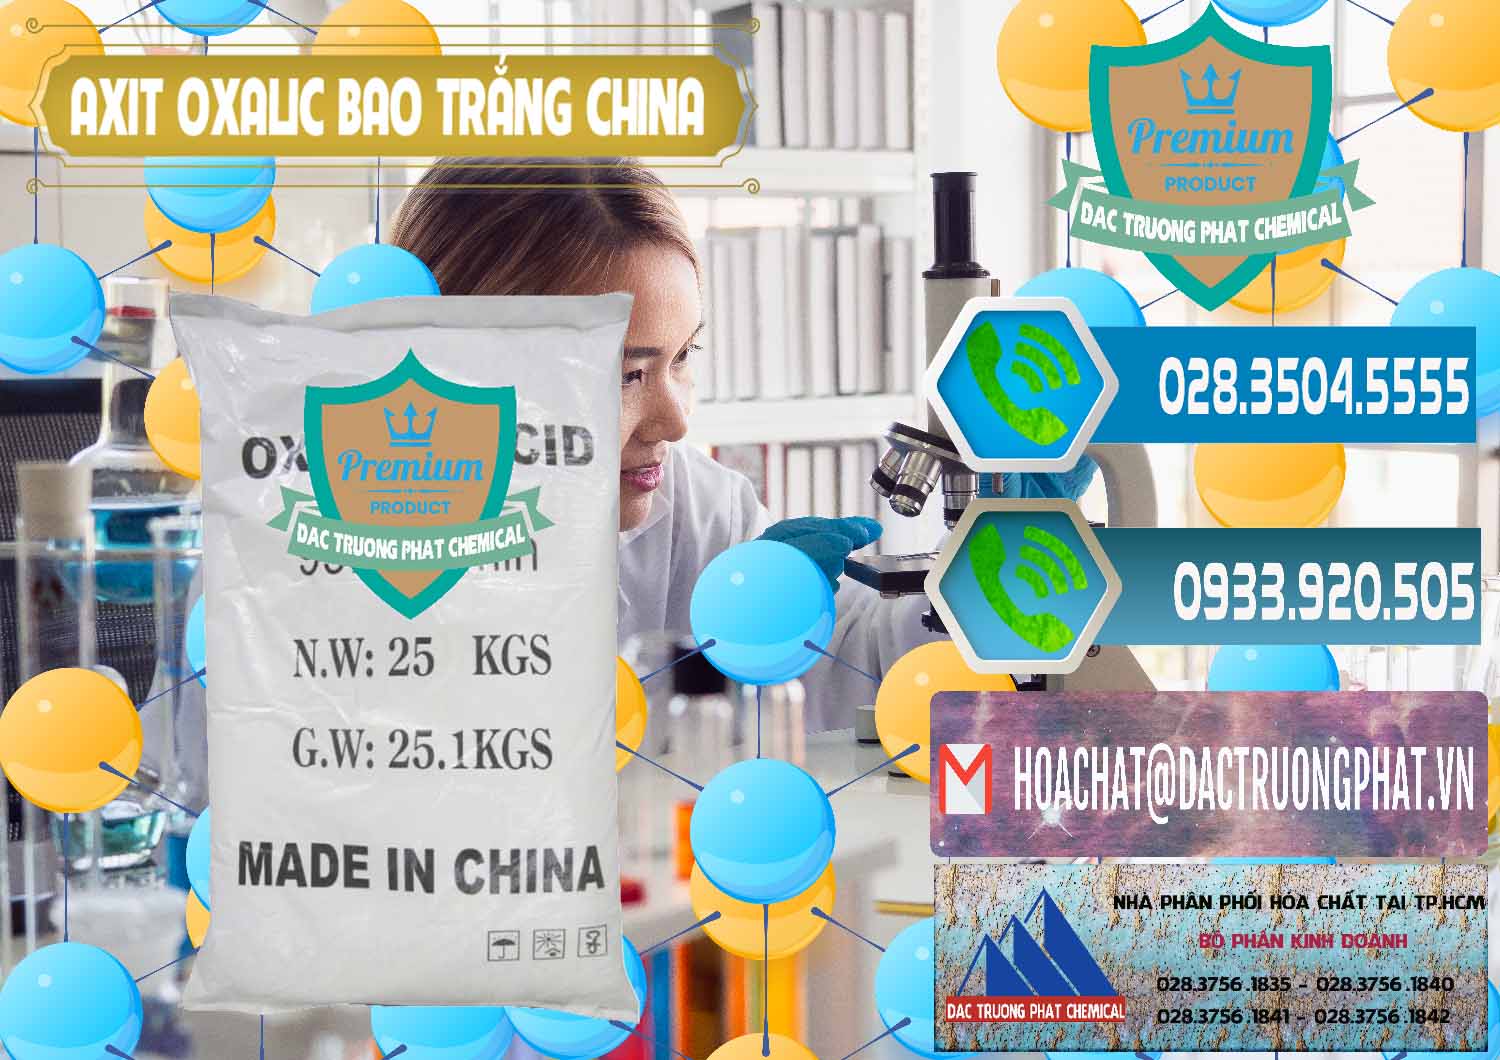 Nơi bán và cung ứng Acid Oxalic – Axit Oxalic 99.6% Bao Trắng Trung Quốc China - 0270 - Cty chuyên cung cấp & nhập khẩu hóa chất tại TP.HCM - congtyhoachat.net